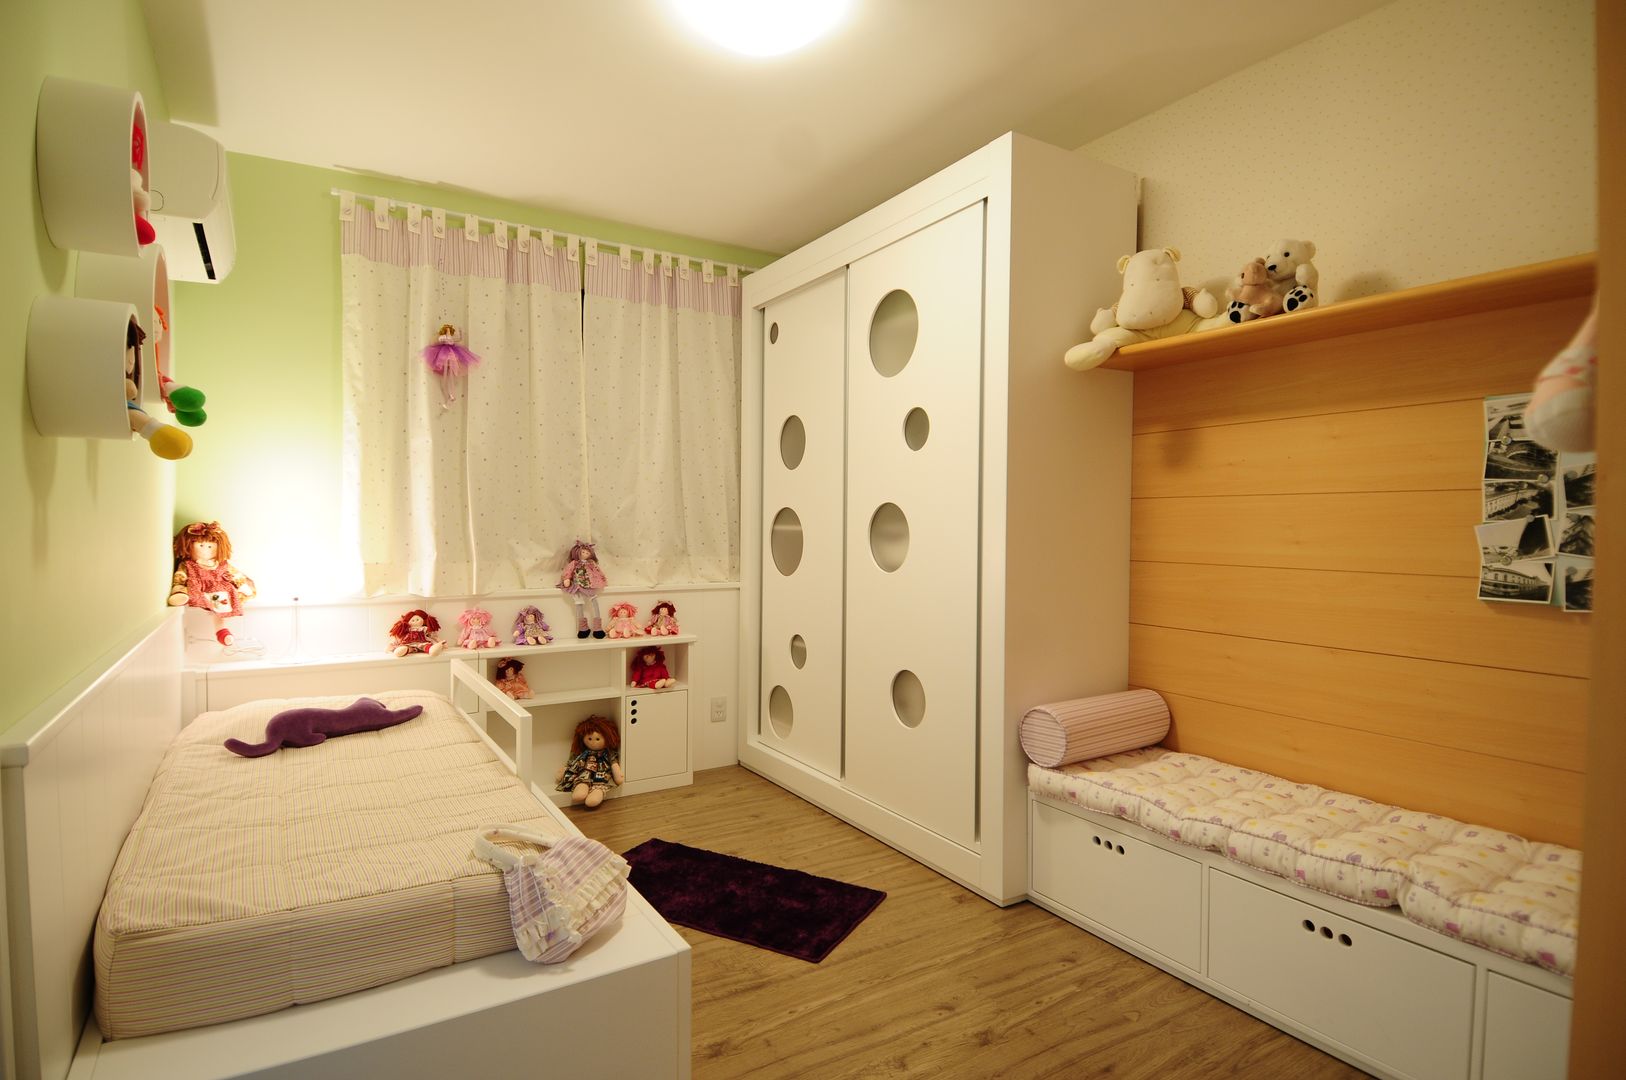 Apartamento Rio Branco., João Linck | Arquitetura João Linck | Arquitetura Dormitorios infantiles de estilo moderno